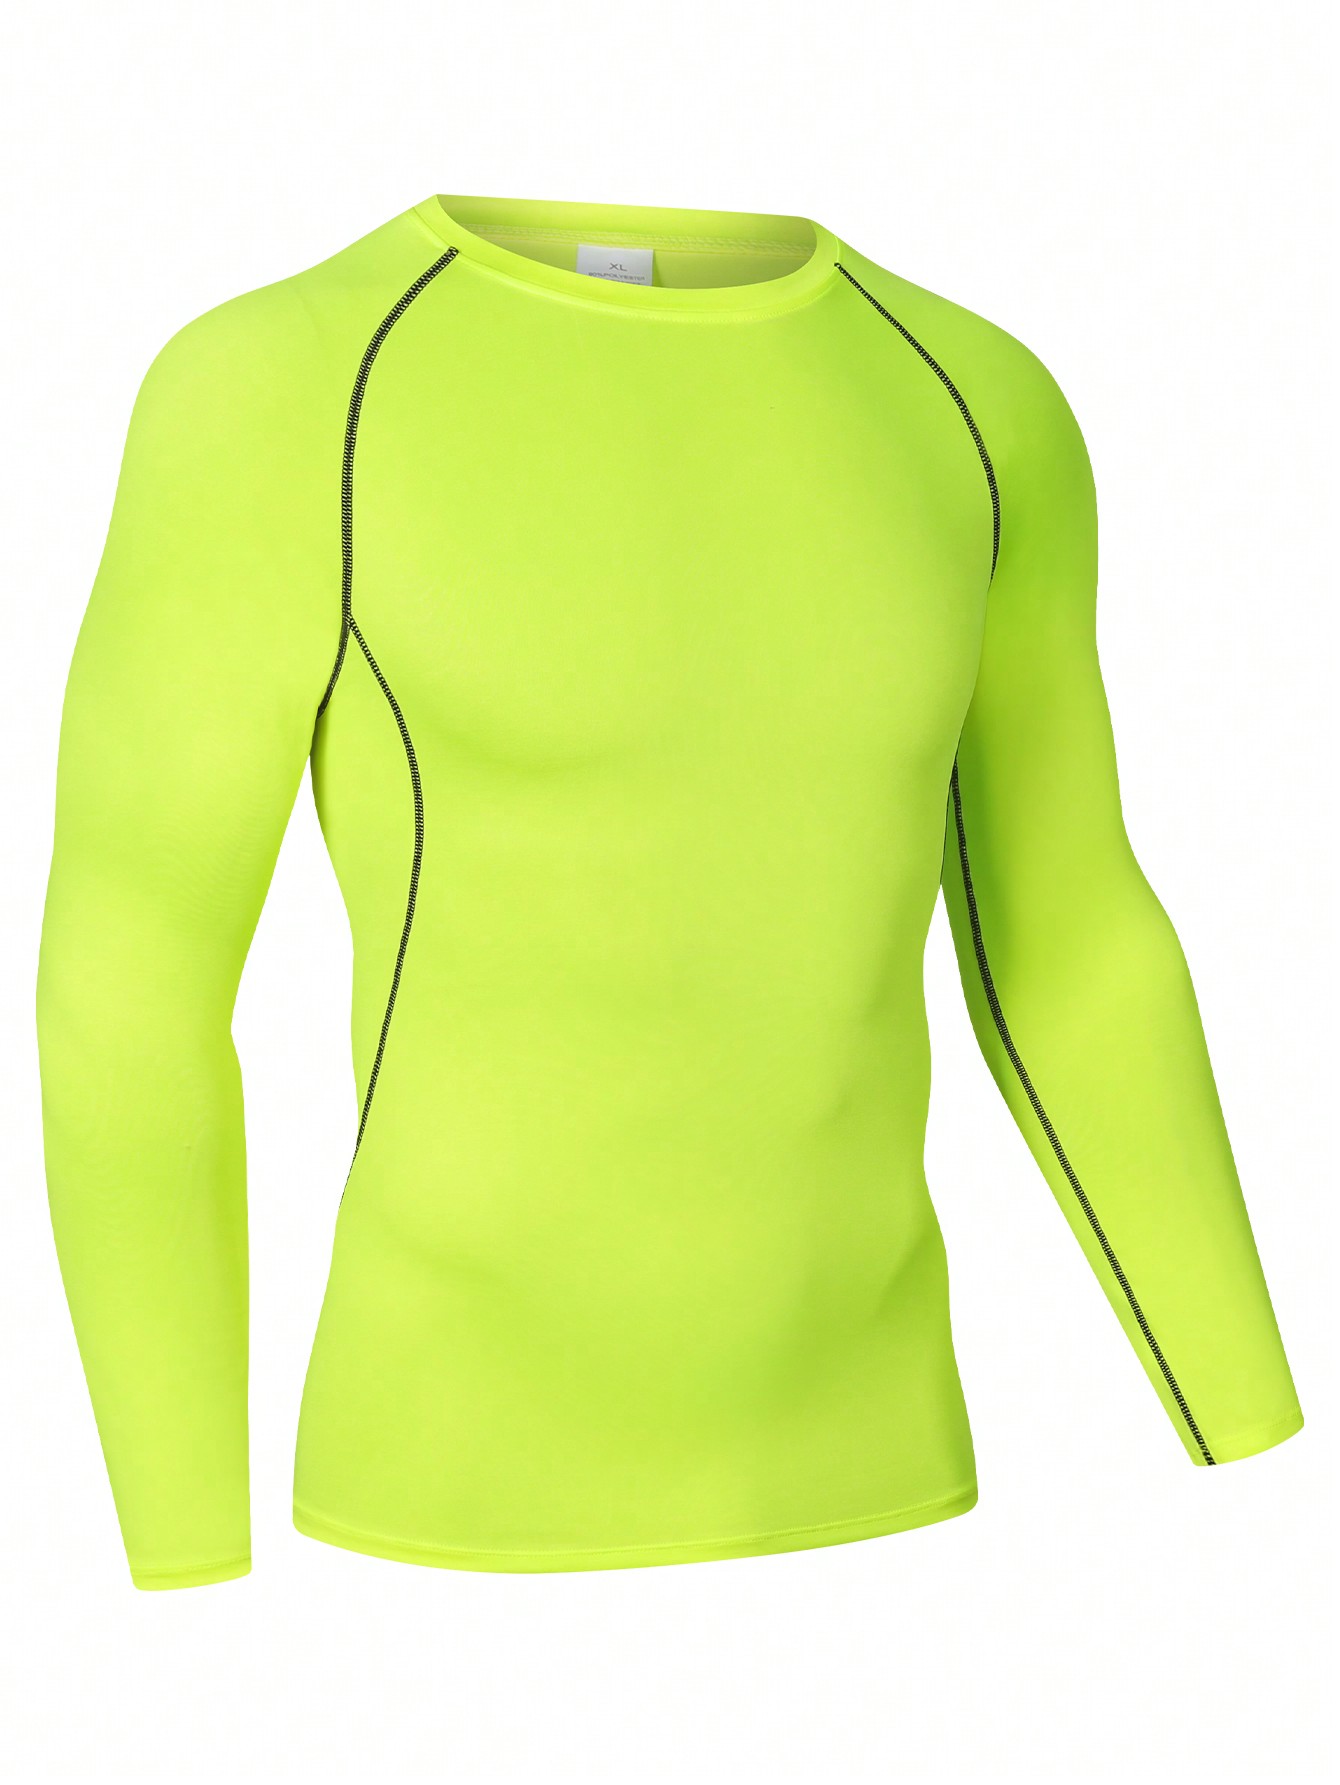 Мужская эластичная компрессионная рубашка для фитнеса с длинными рукавами, зеленый мужская футболка для бега бега быстросохнущая компрессионная облегающая футболка для фитнеса тренажерного зала футбола мужская футбол